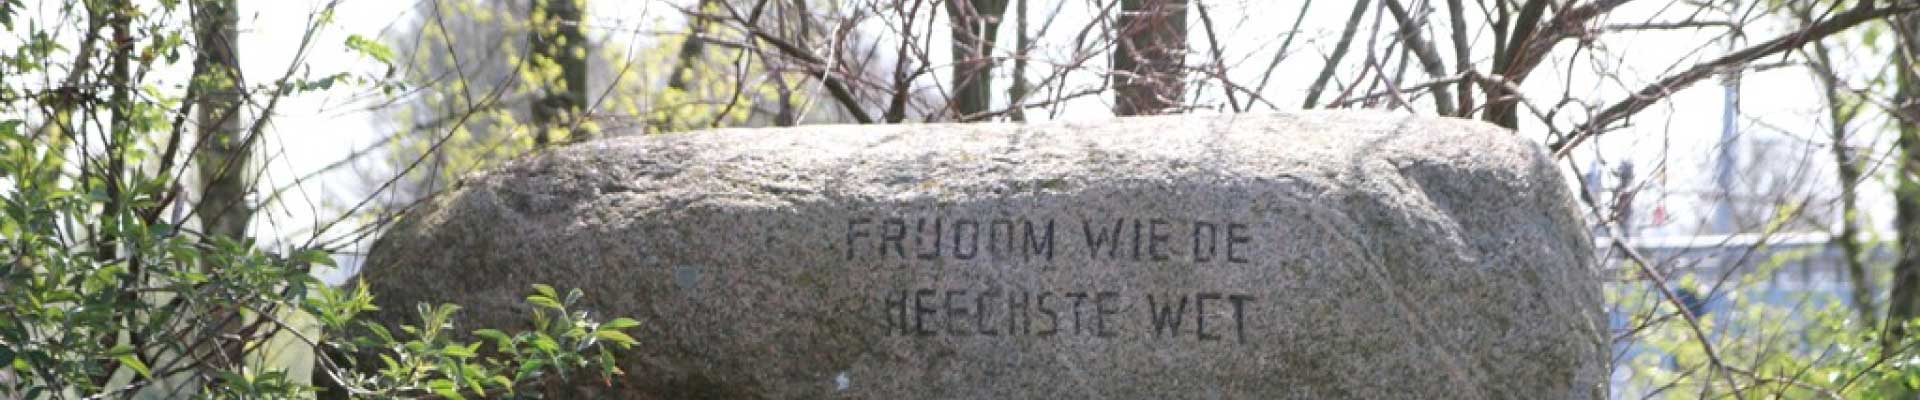 Herdenkingsmonument 2e Wereldoorlog met de tekst 'Frijdom wie de heechste wet'